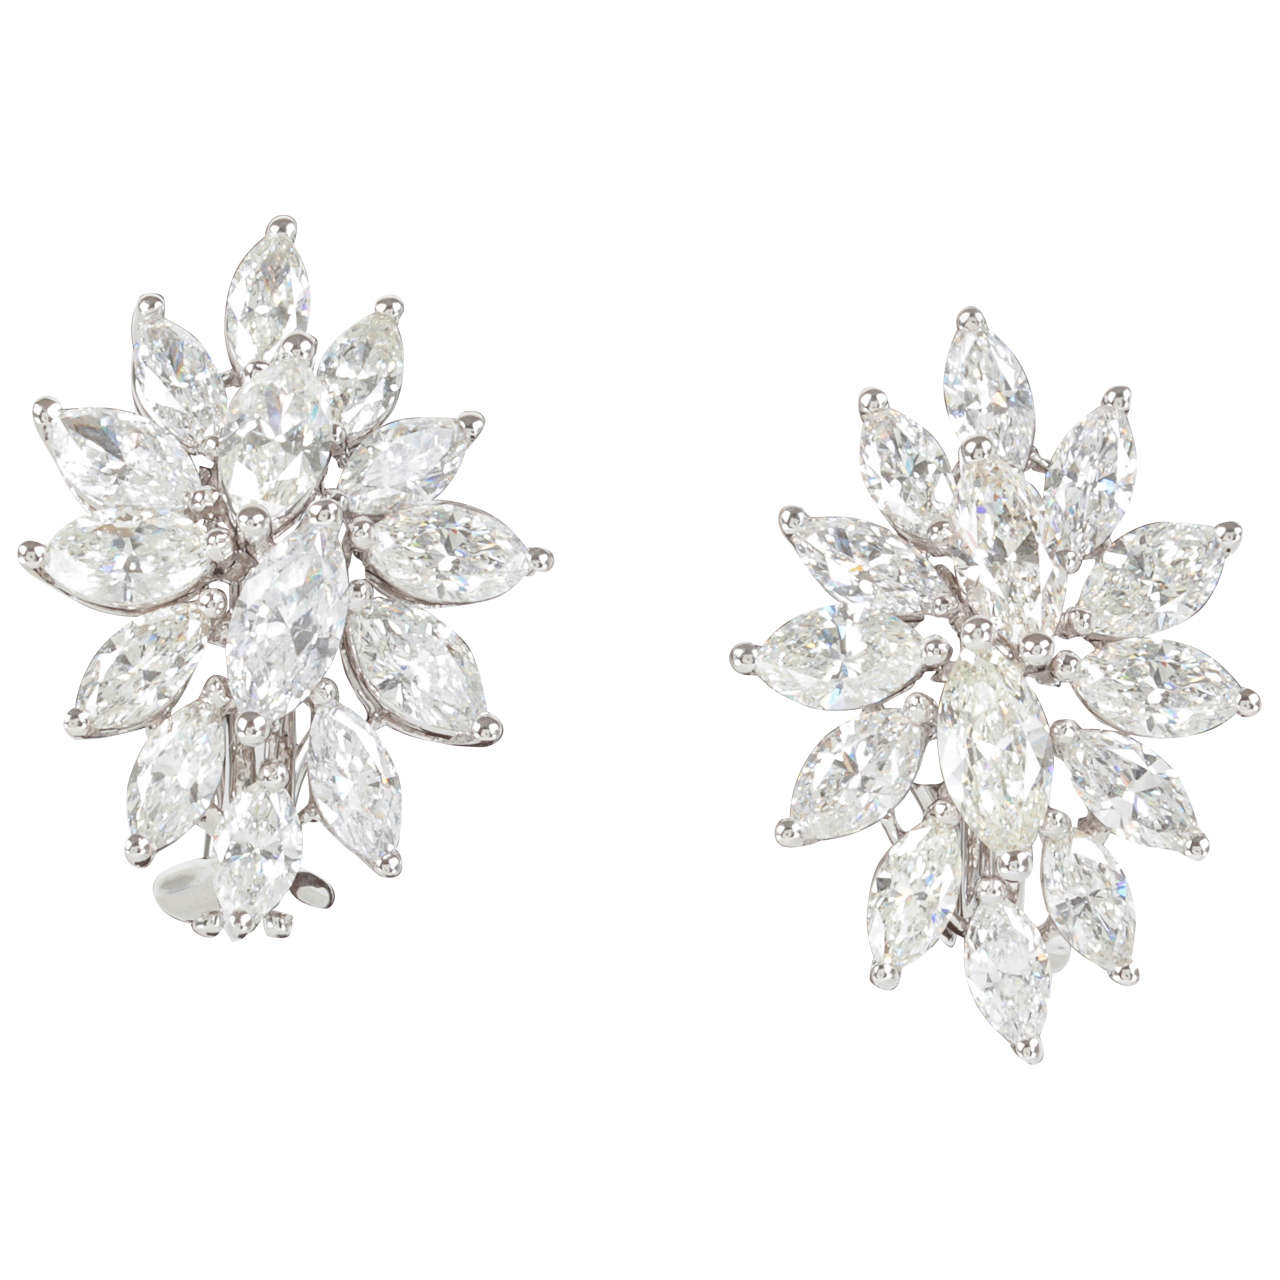 Elegant Diamond Gold Cluster Earrings For Sale at 1stdibs